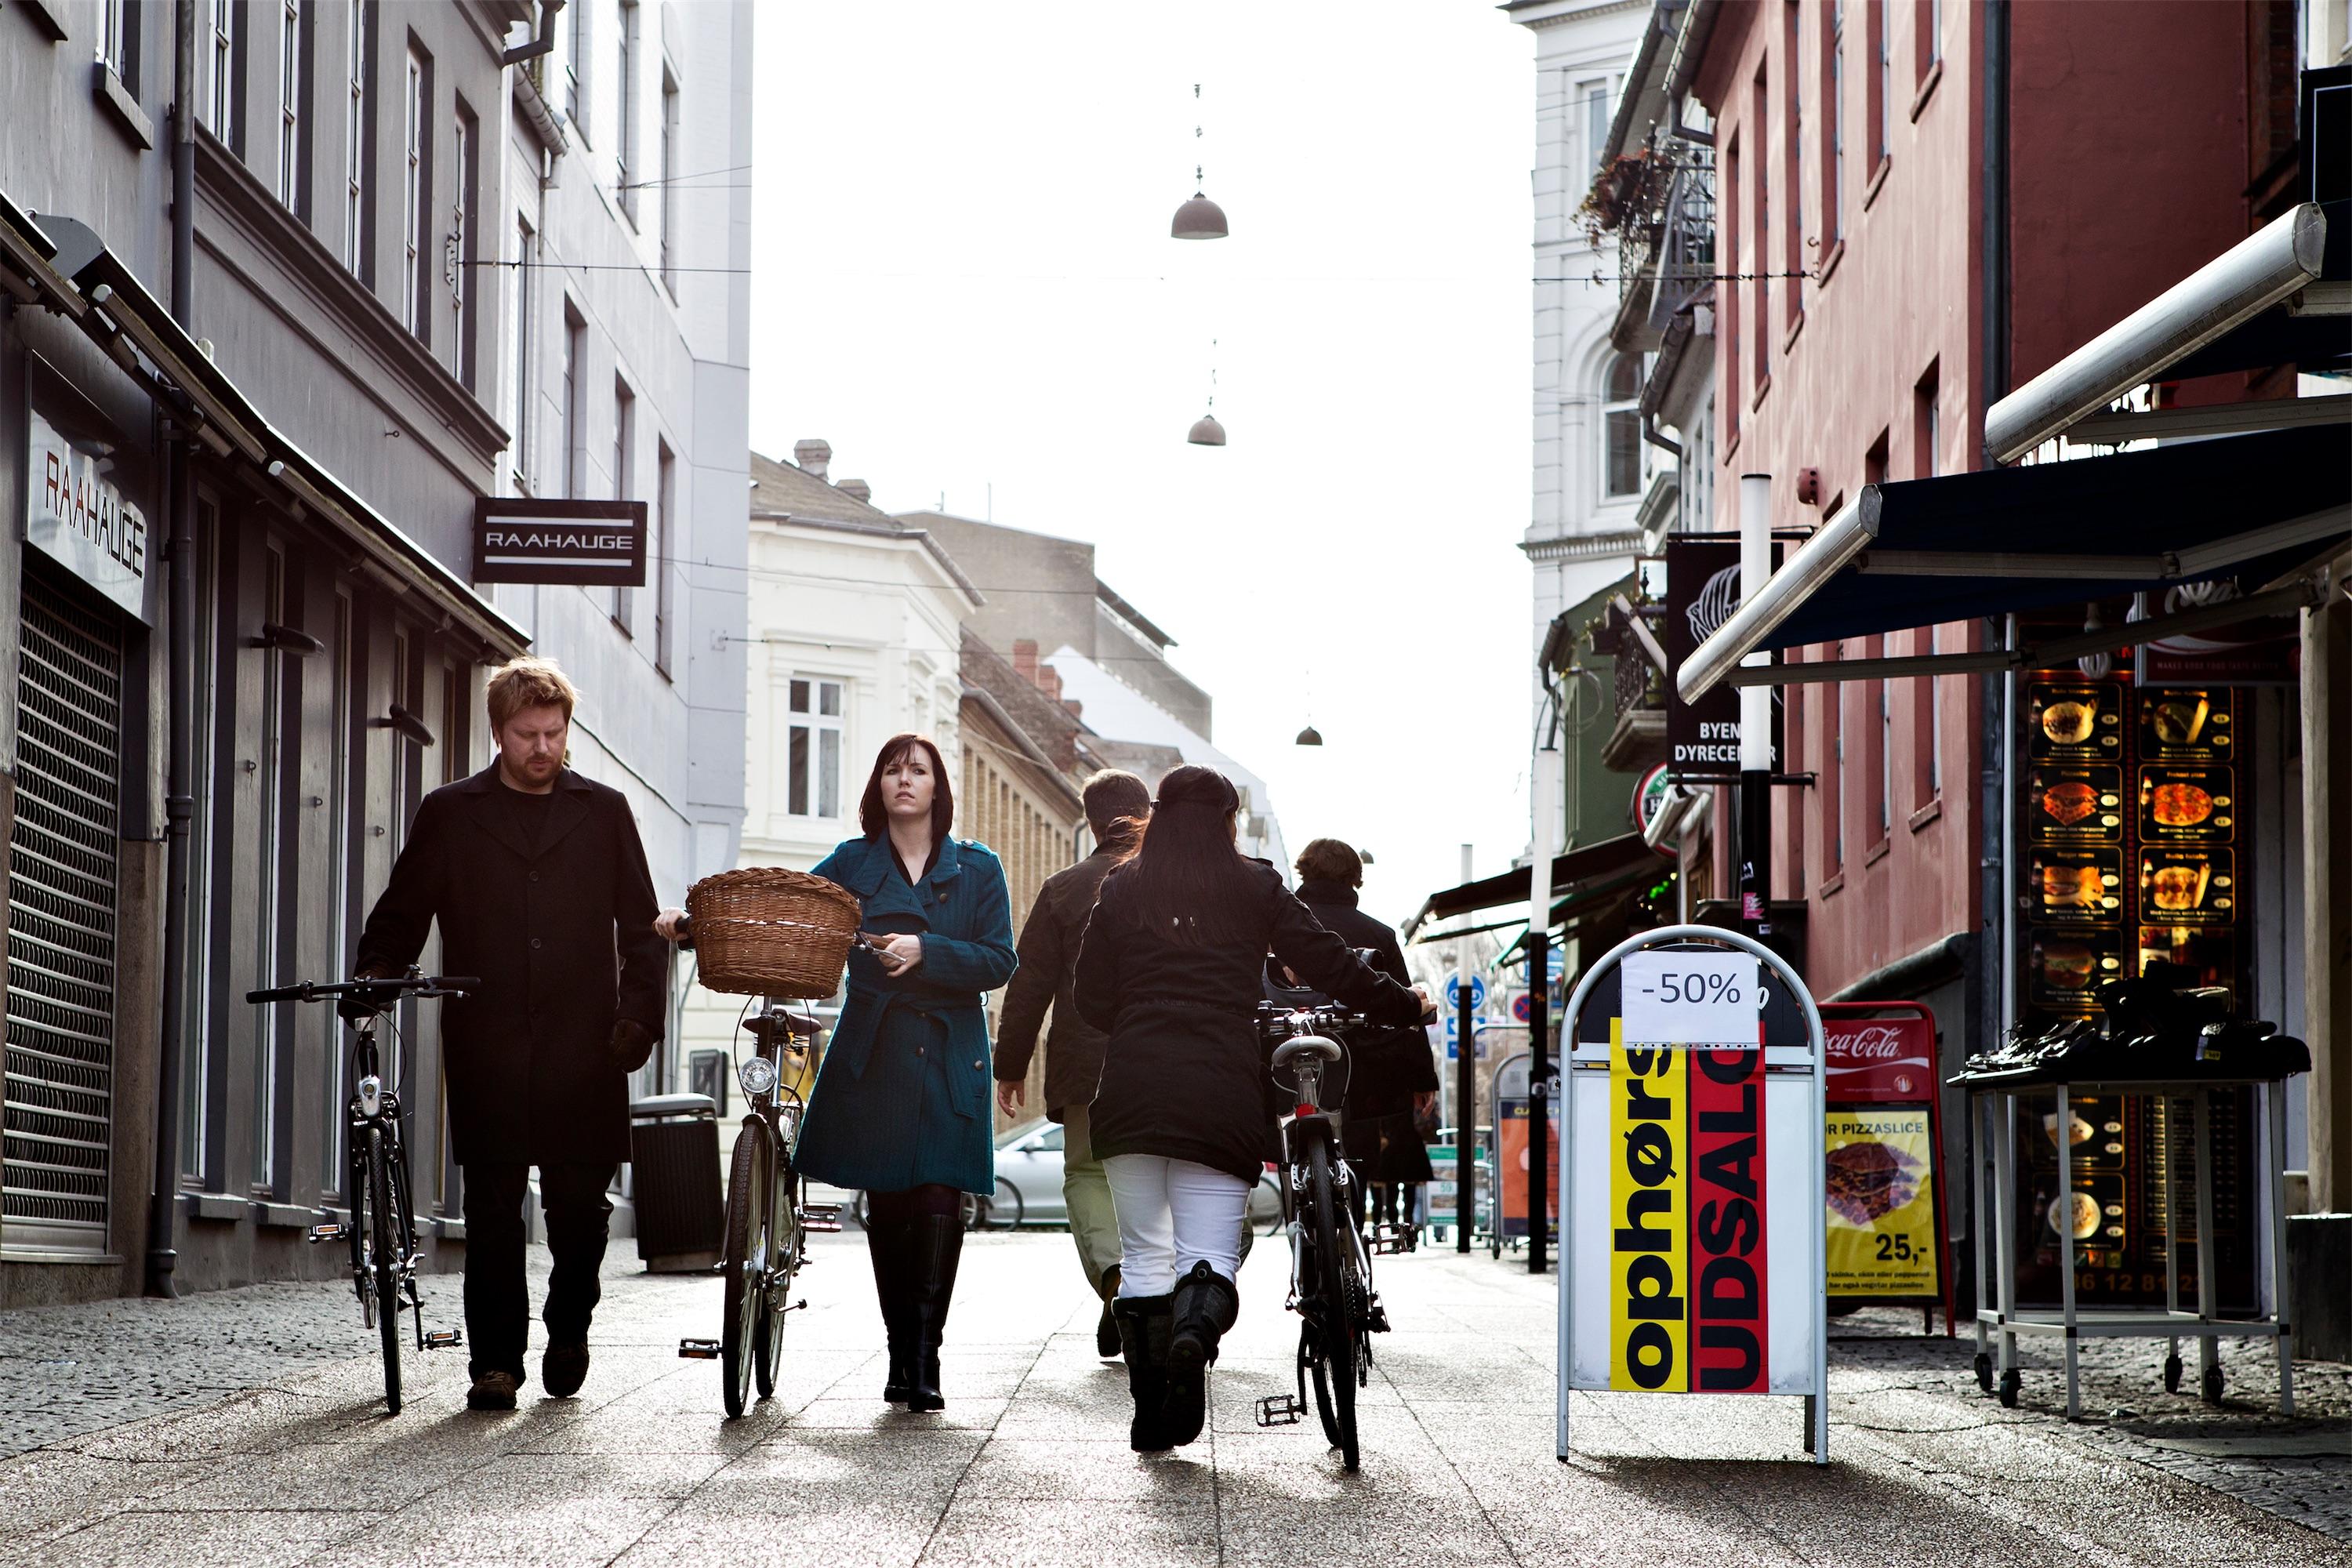 Selv i en tid med mange negative mediehistorier om sociale ydelser bakker danskerne generelt op om velfærdsydelserne, bemærker valgforsker. Foto: Polfoto